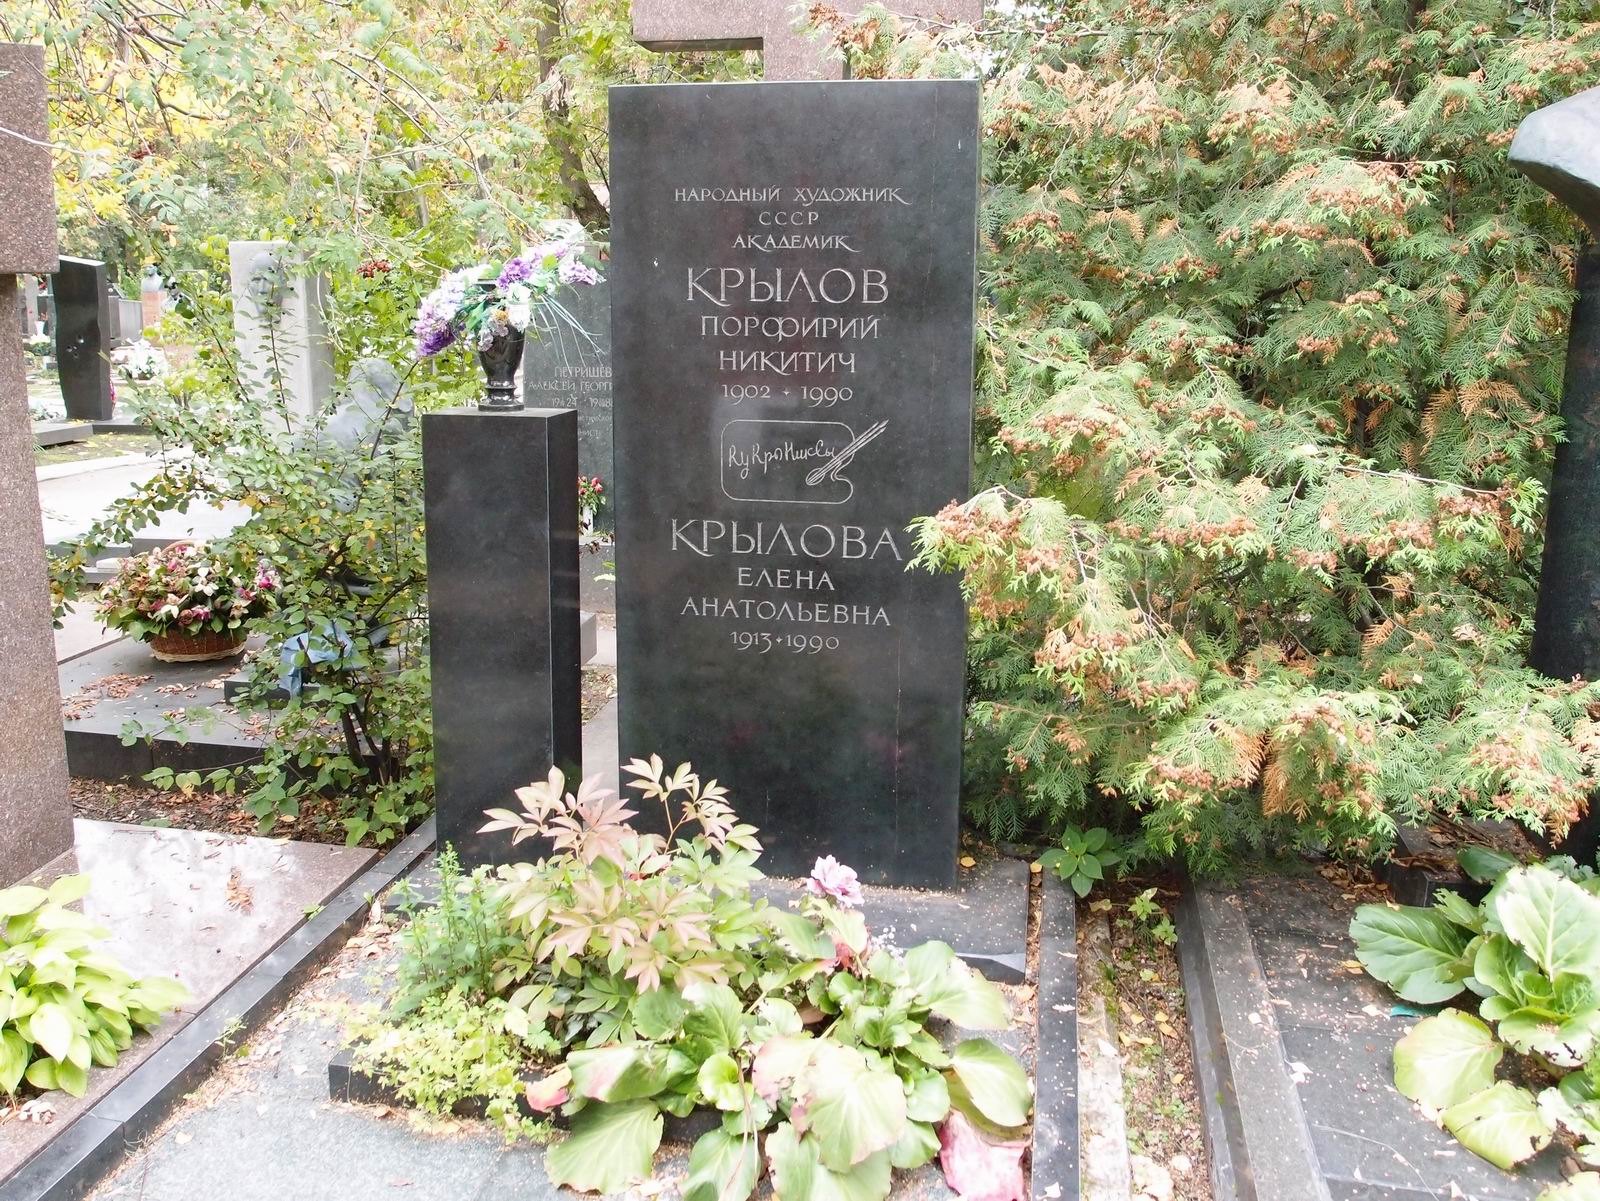 Памятник на могиле Крылову П.Н. (1902-1990), худ. А.Крылов, Т.Крылова, на Новодевичьем кладбище (10-6-3).